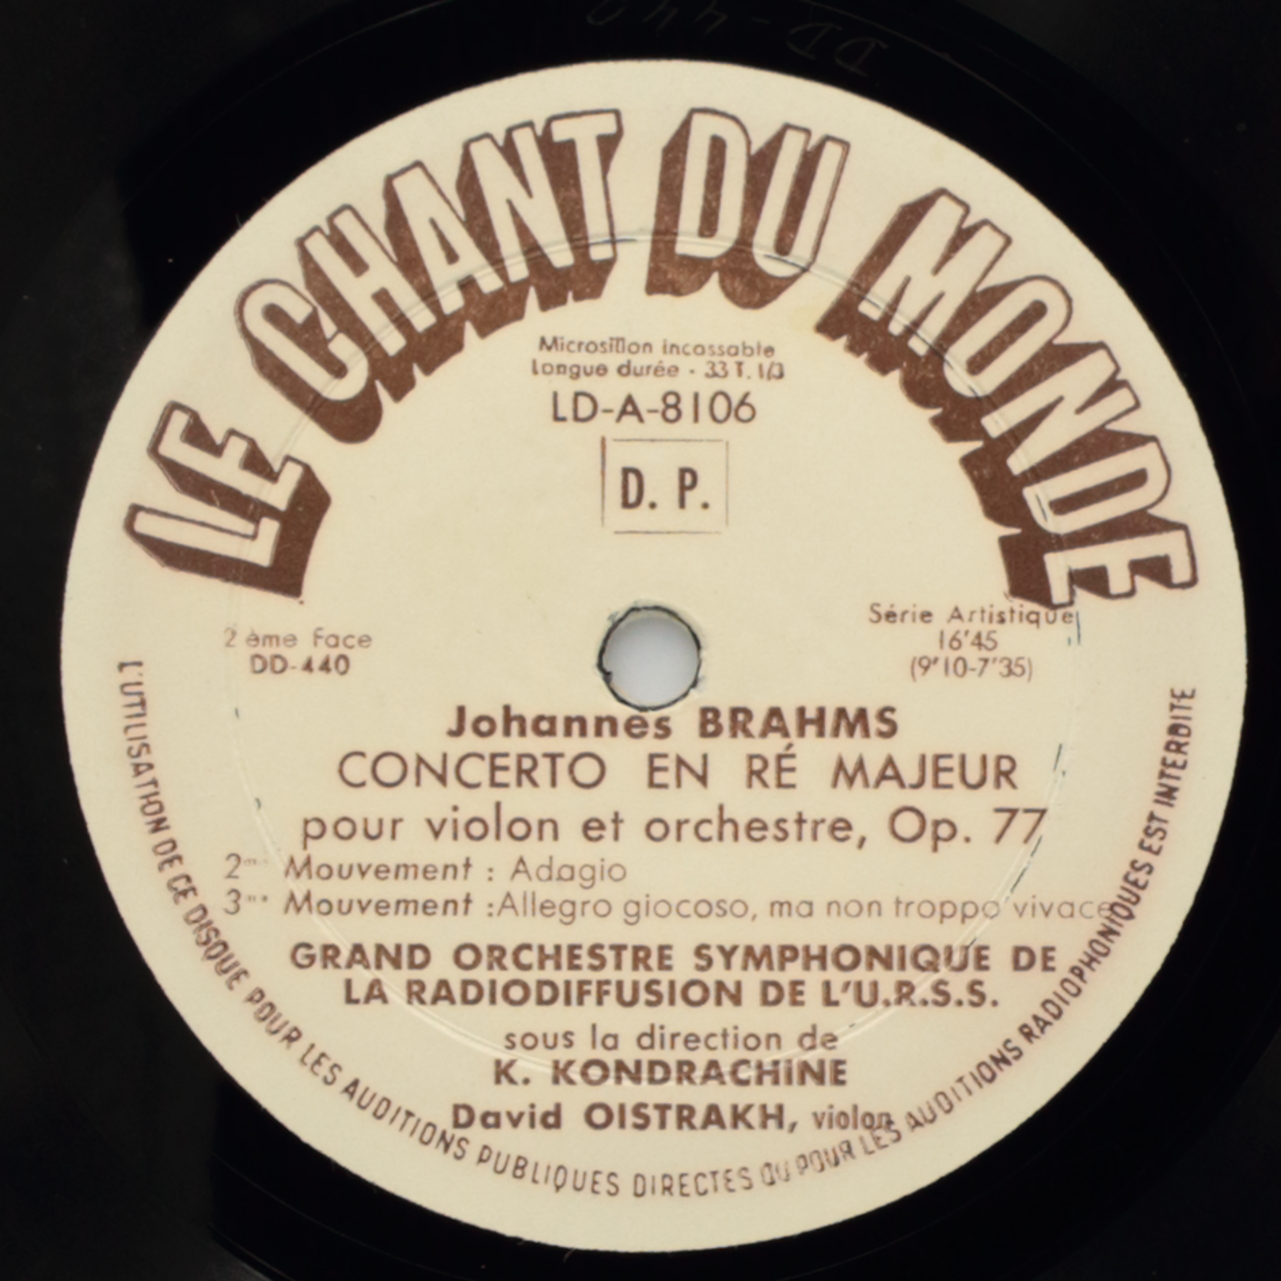 Brahms: Concerto en Re majeur pour violon et orchestre, Op. 77